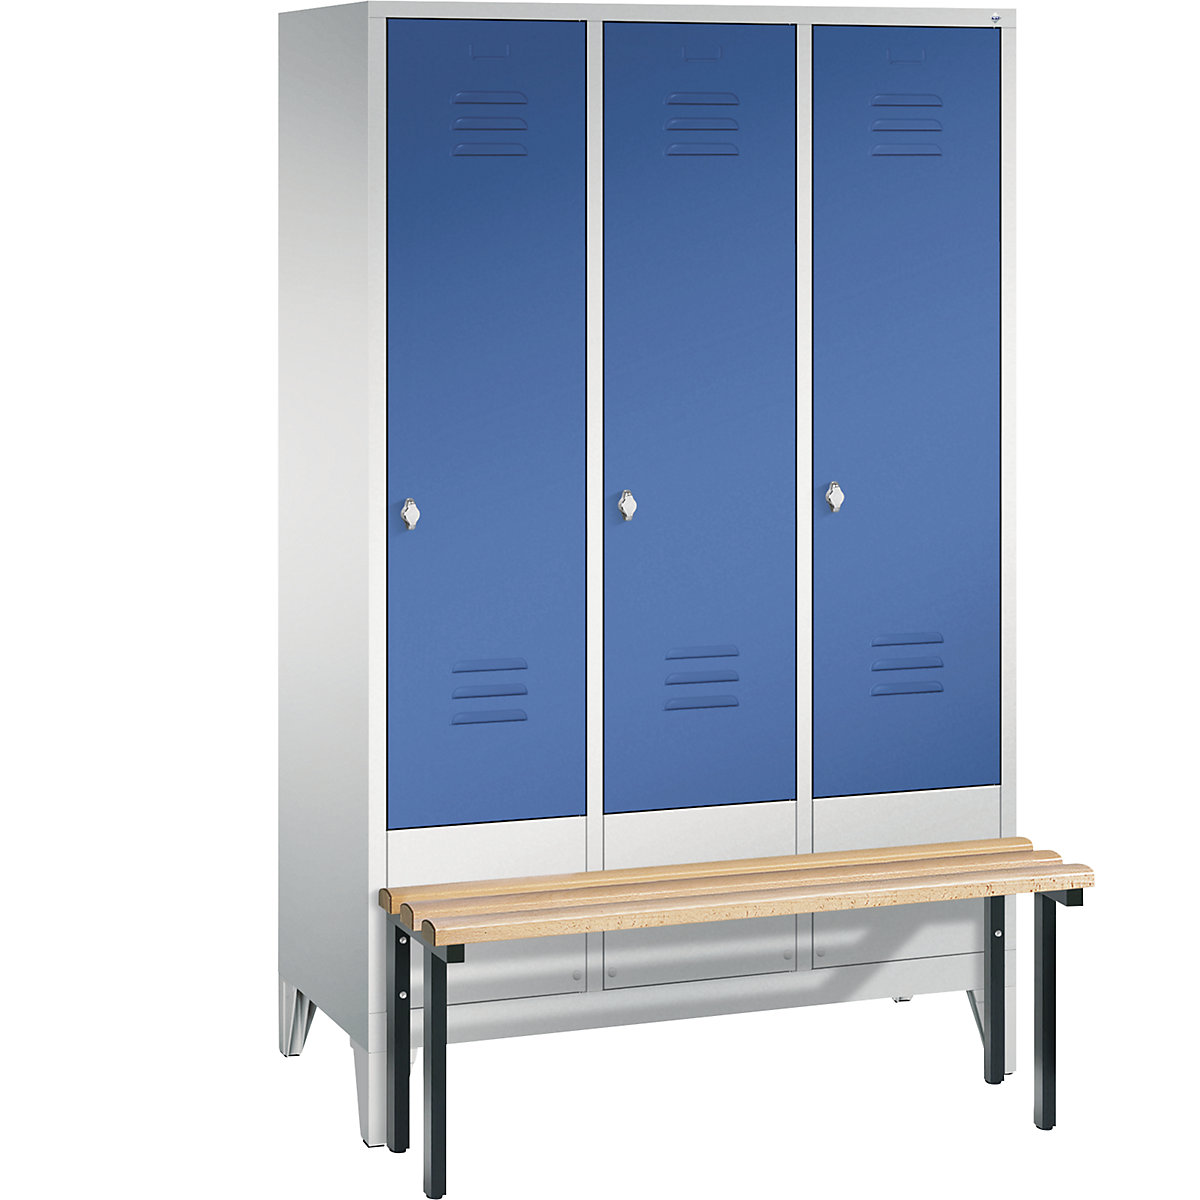 Garderobna omara CLASSIC s klopjo – C+P, 3 predelki, širina 400 mm/predelek, svetlo sive / encijan modre barve-7